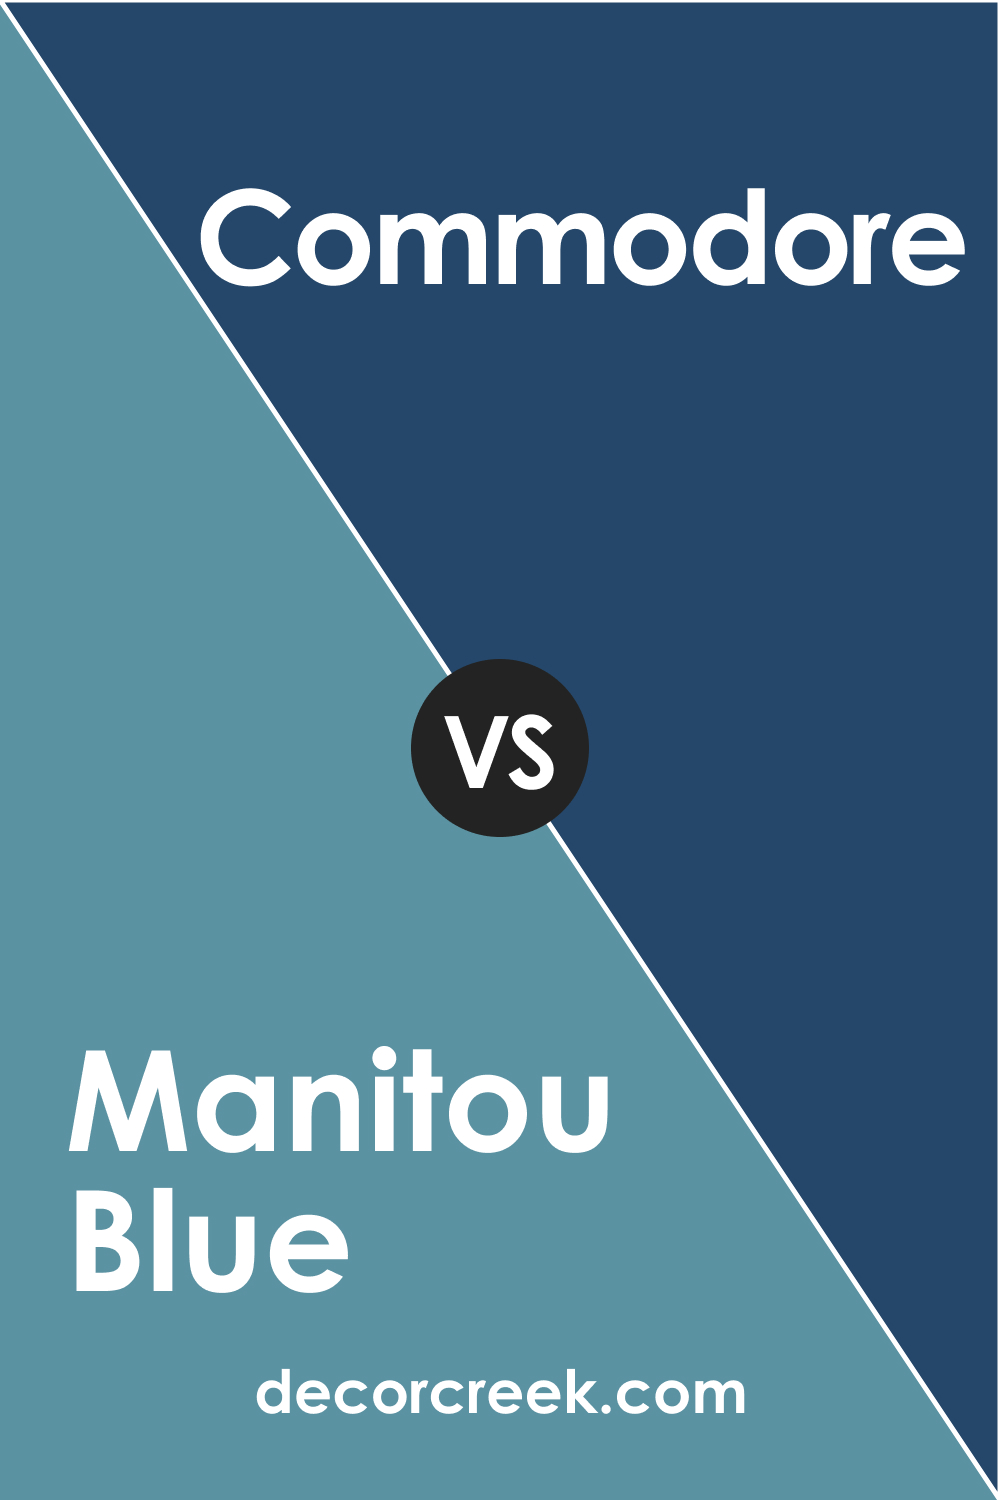 SW 6501 Manitou Blue vs. SW 6524 Commodore